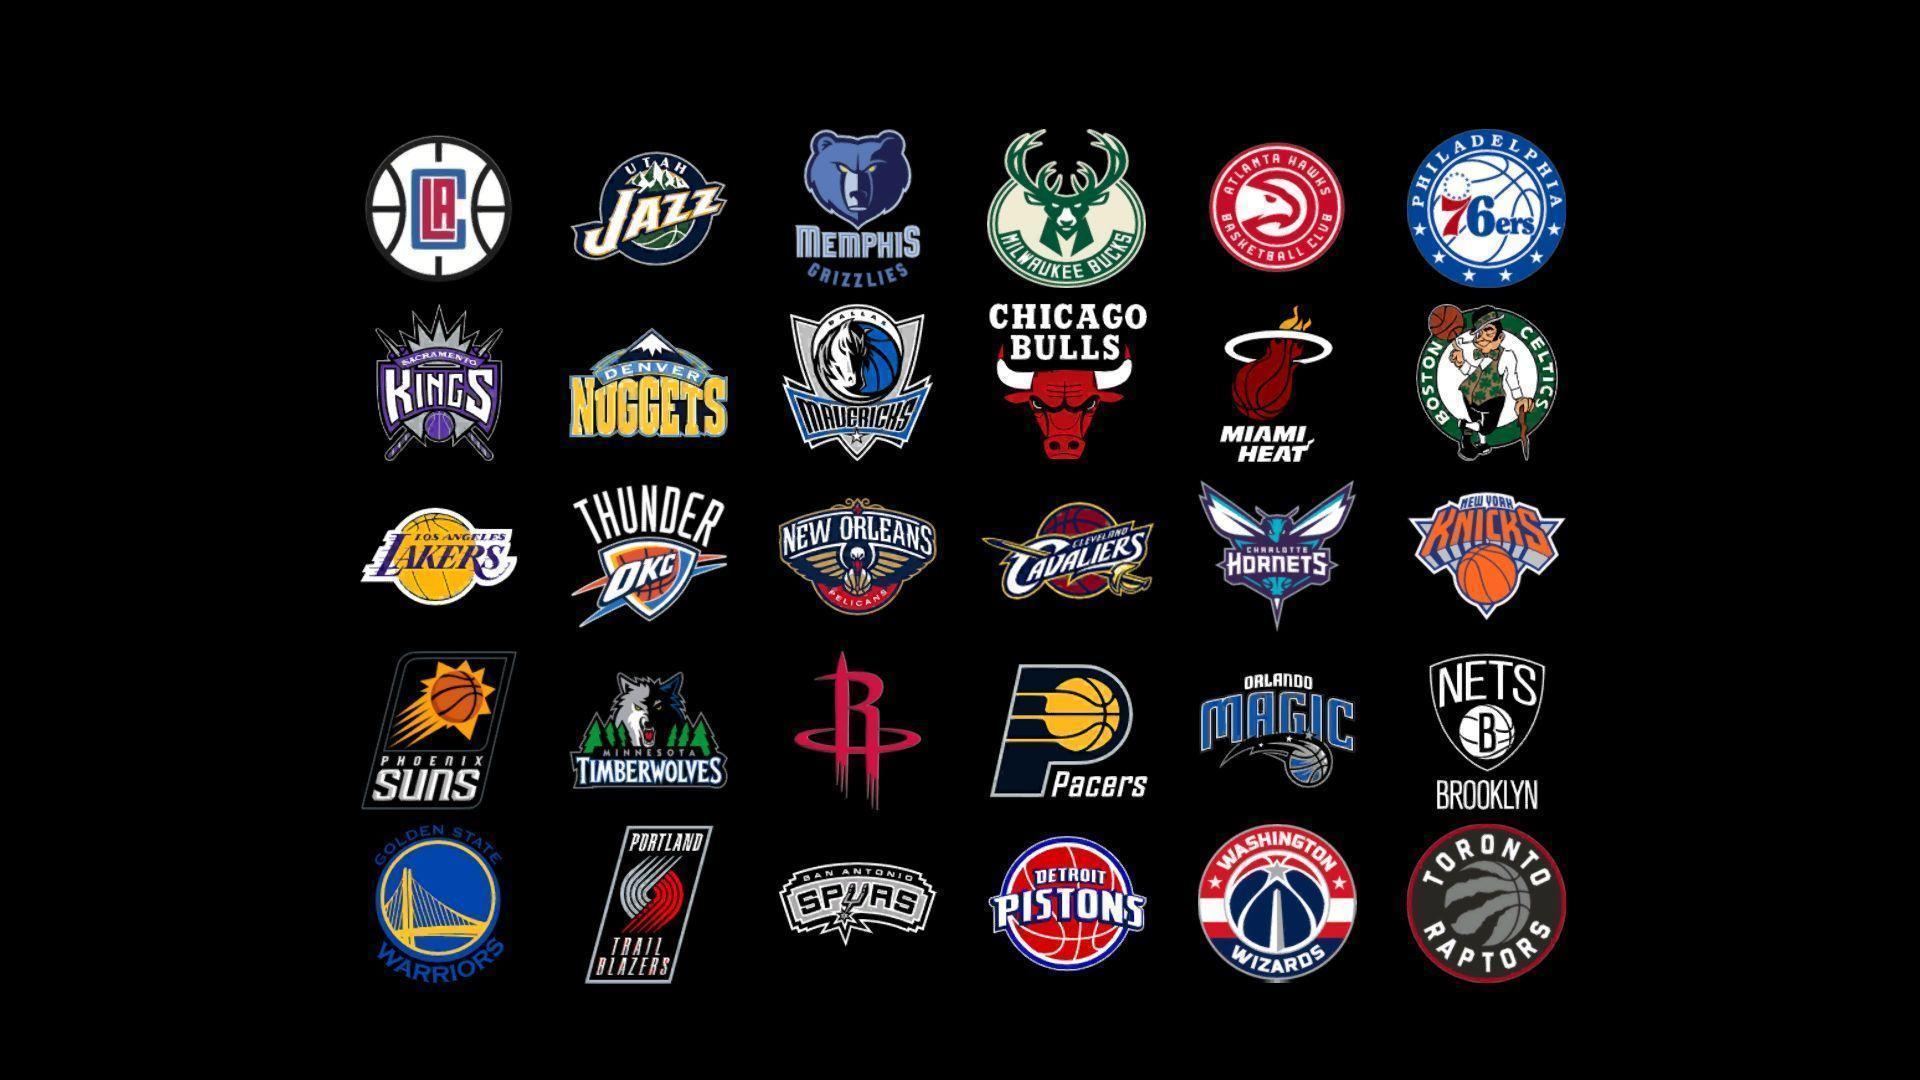 All Basketball Logos NBA Teams 2018